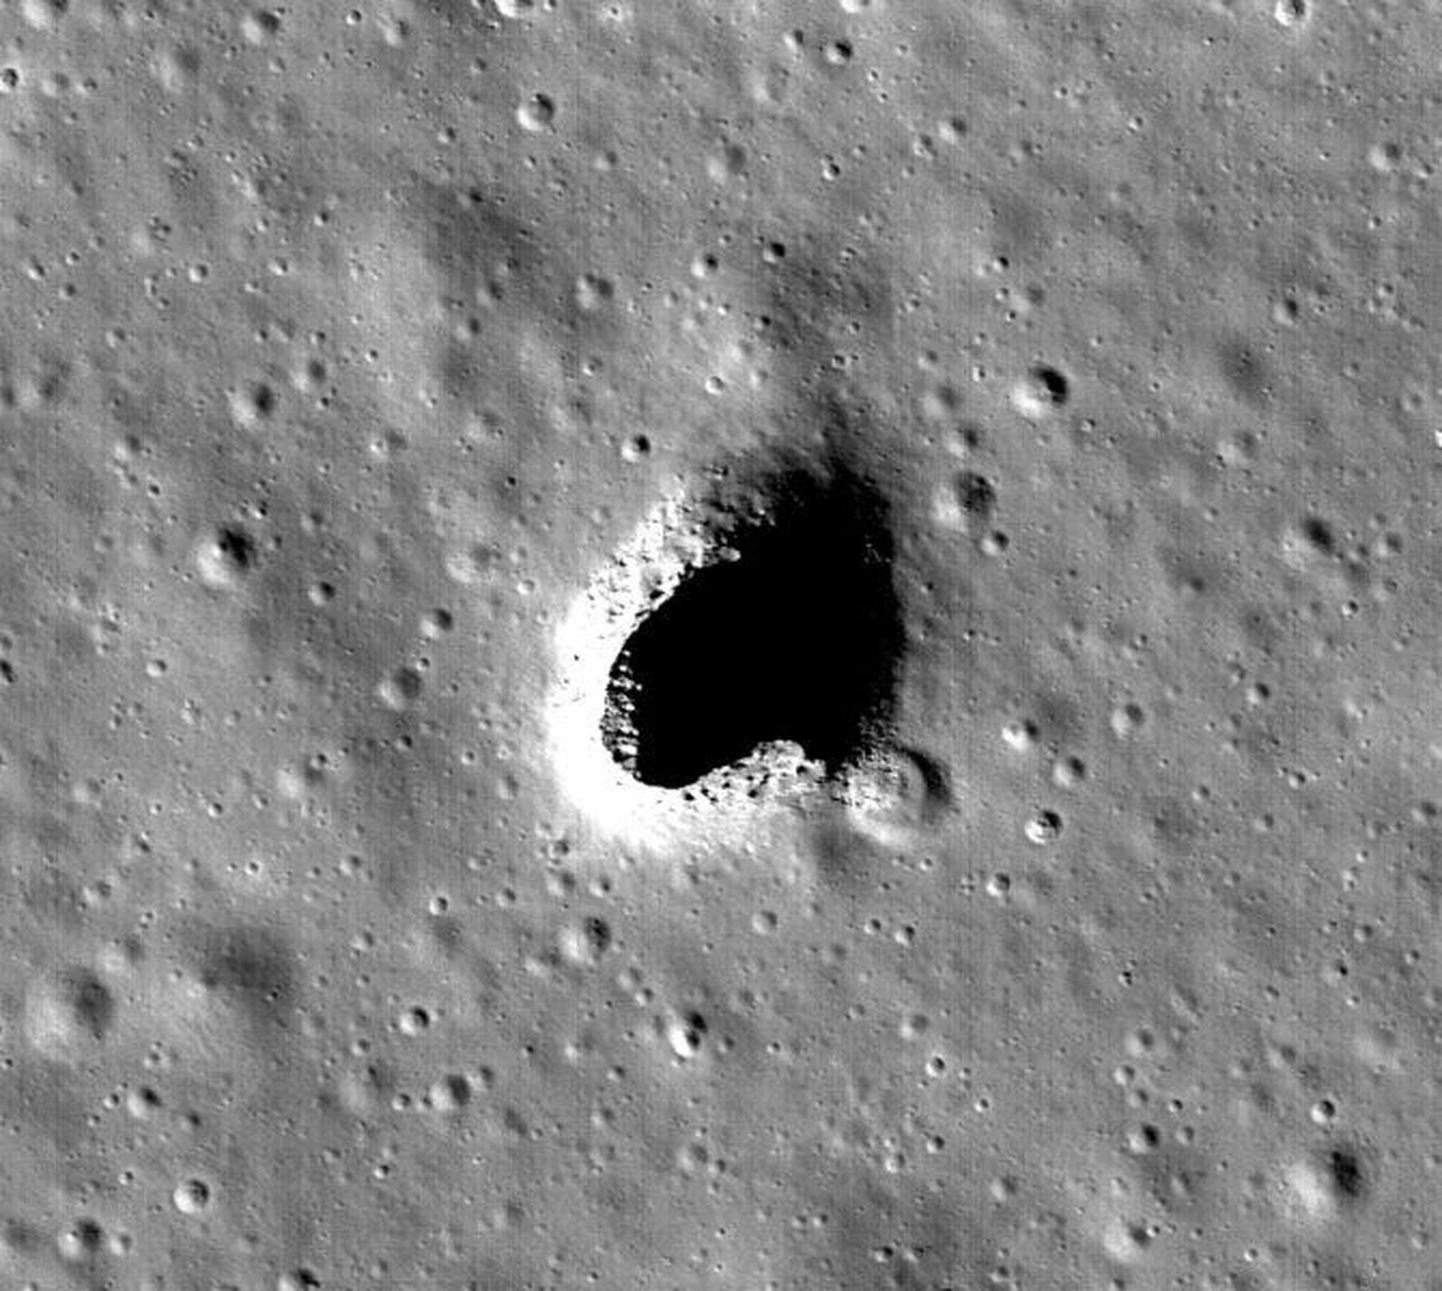 Kuult avastatud hiigelkoobas Marius Hills Skylight JAXA SELENE missiooni võetud pildil.